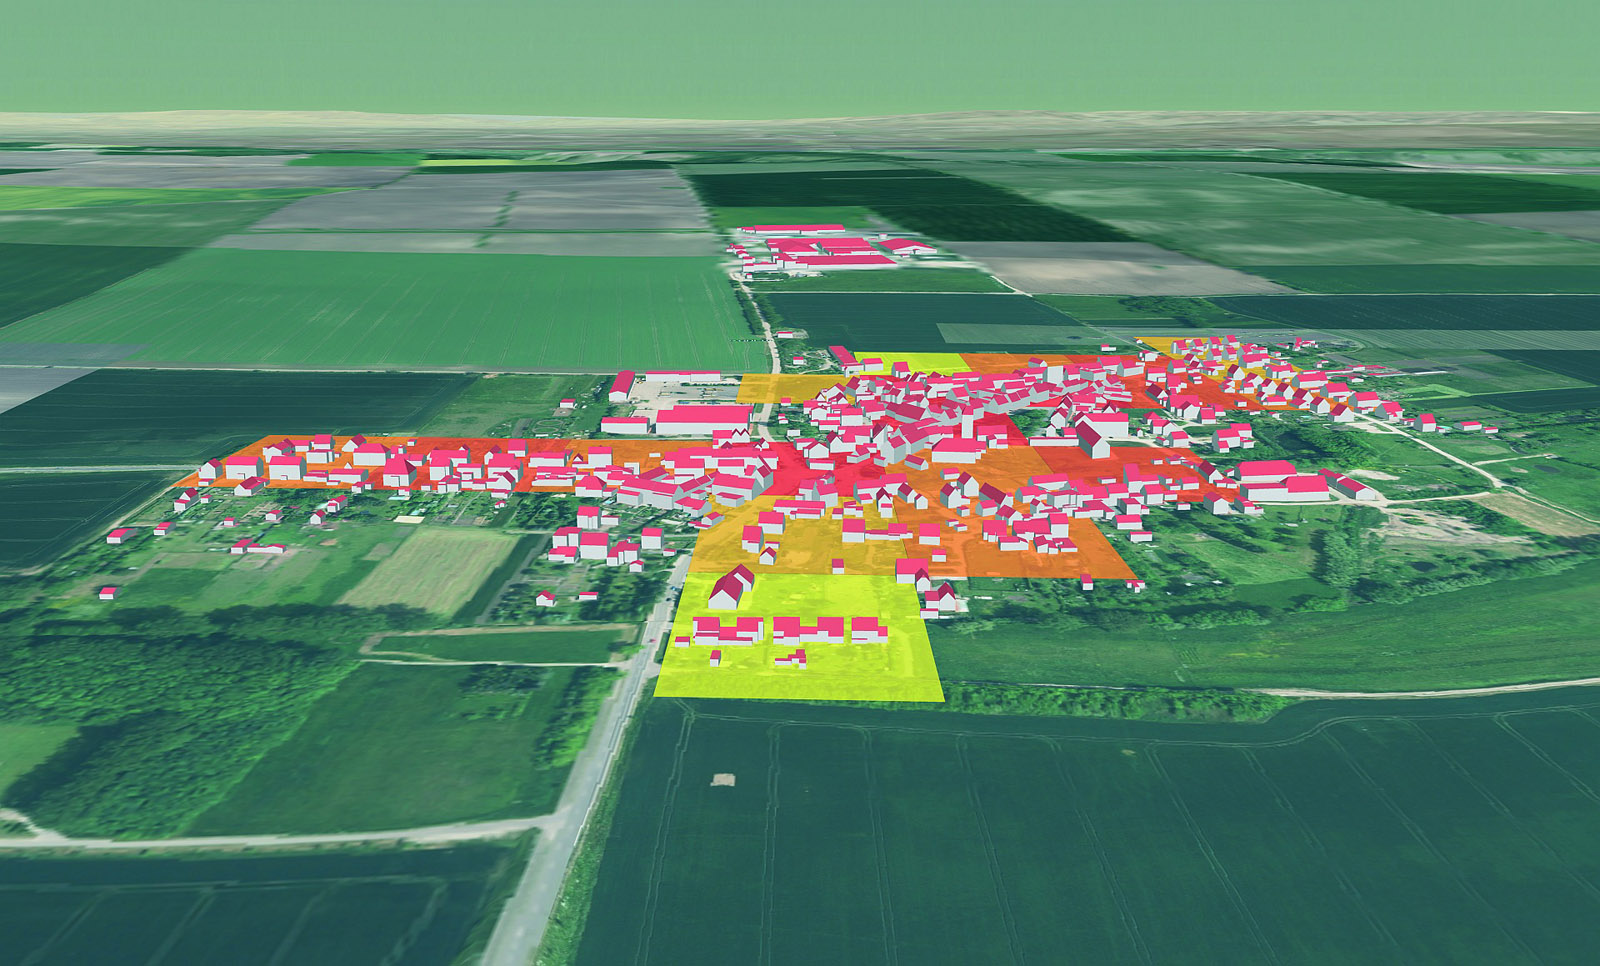 Abb. 1 Visualisierter Wärmebedarf der Gemeinde Neumark (486 Einwohner) im 100 x 100 m Raster. Dunkle Farben deuten auf einen hohen Wärmebedarf hin. Die Ergebnisse wurden anhand der Gebäudestrukturen abgeschätzt.